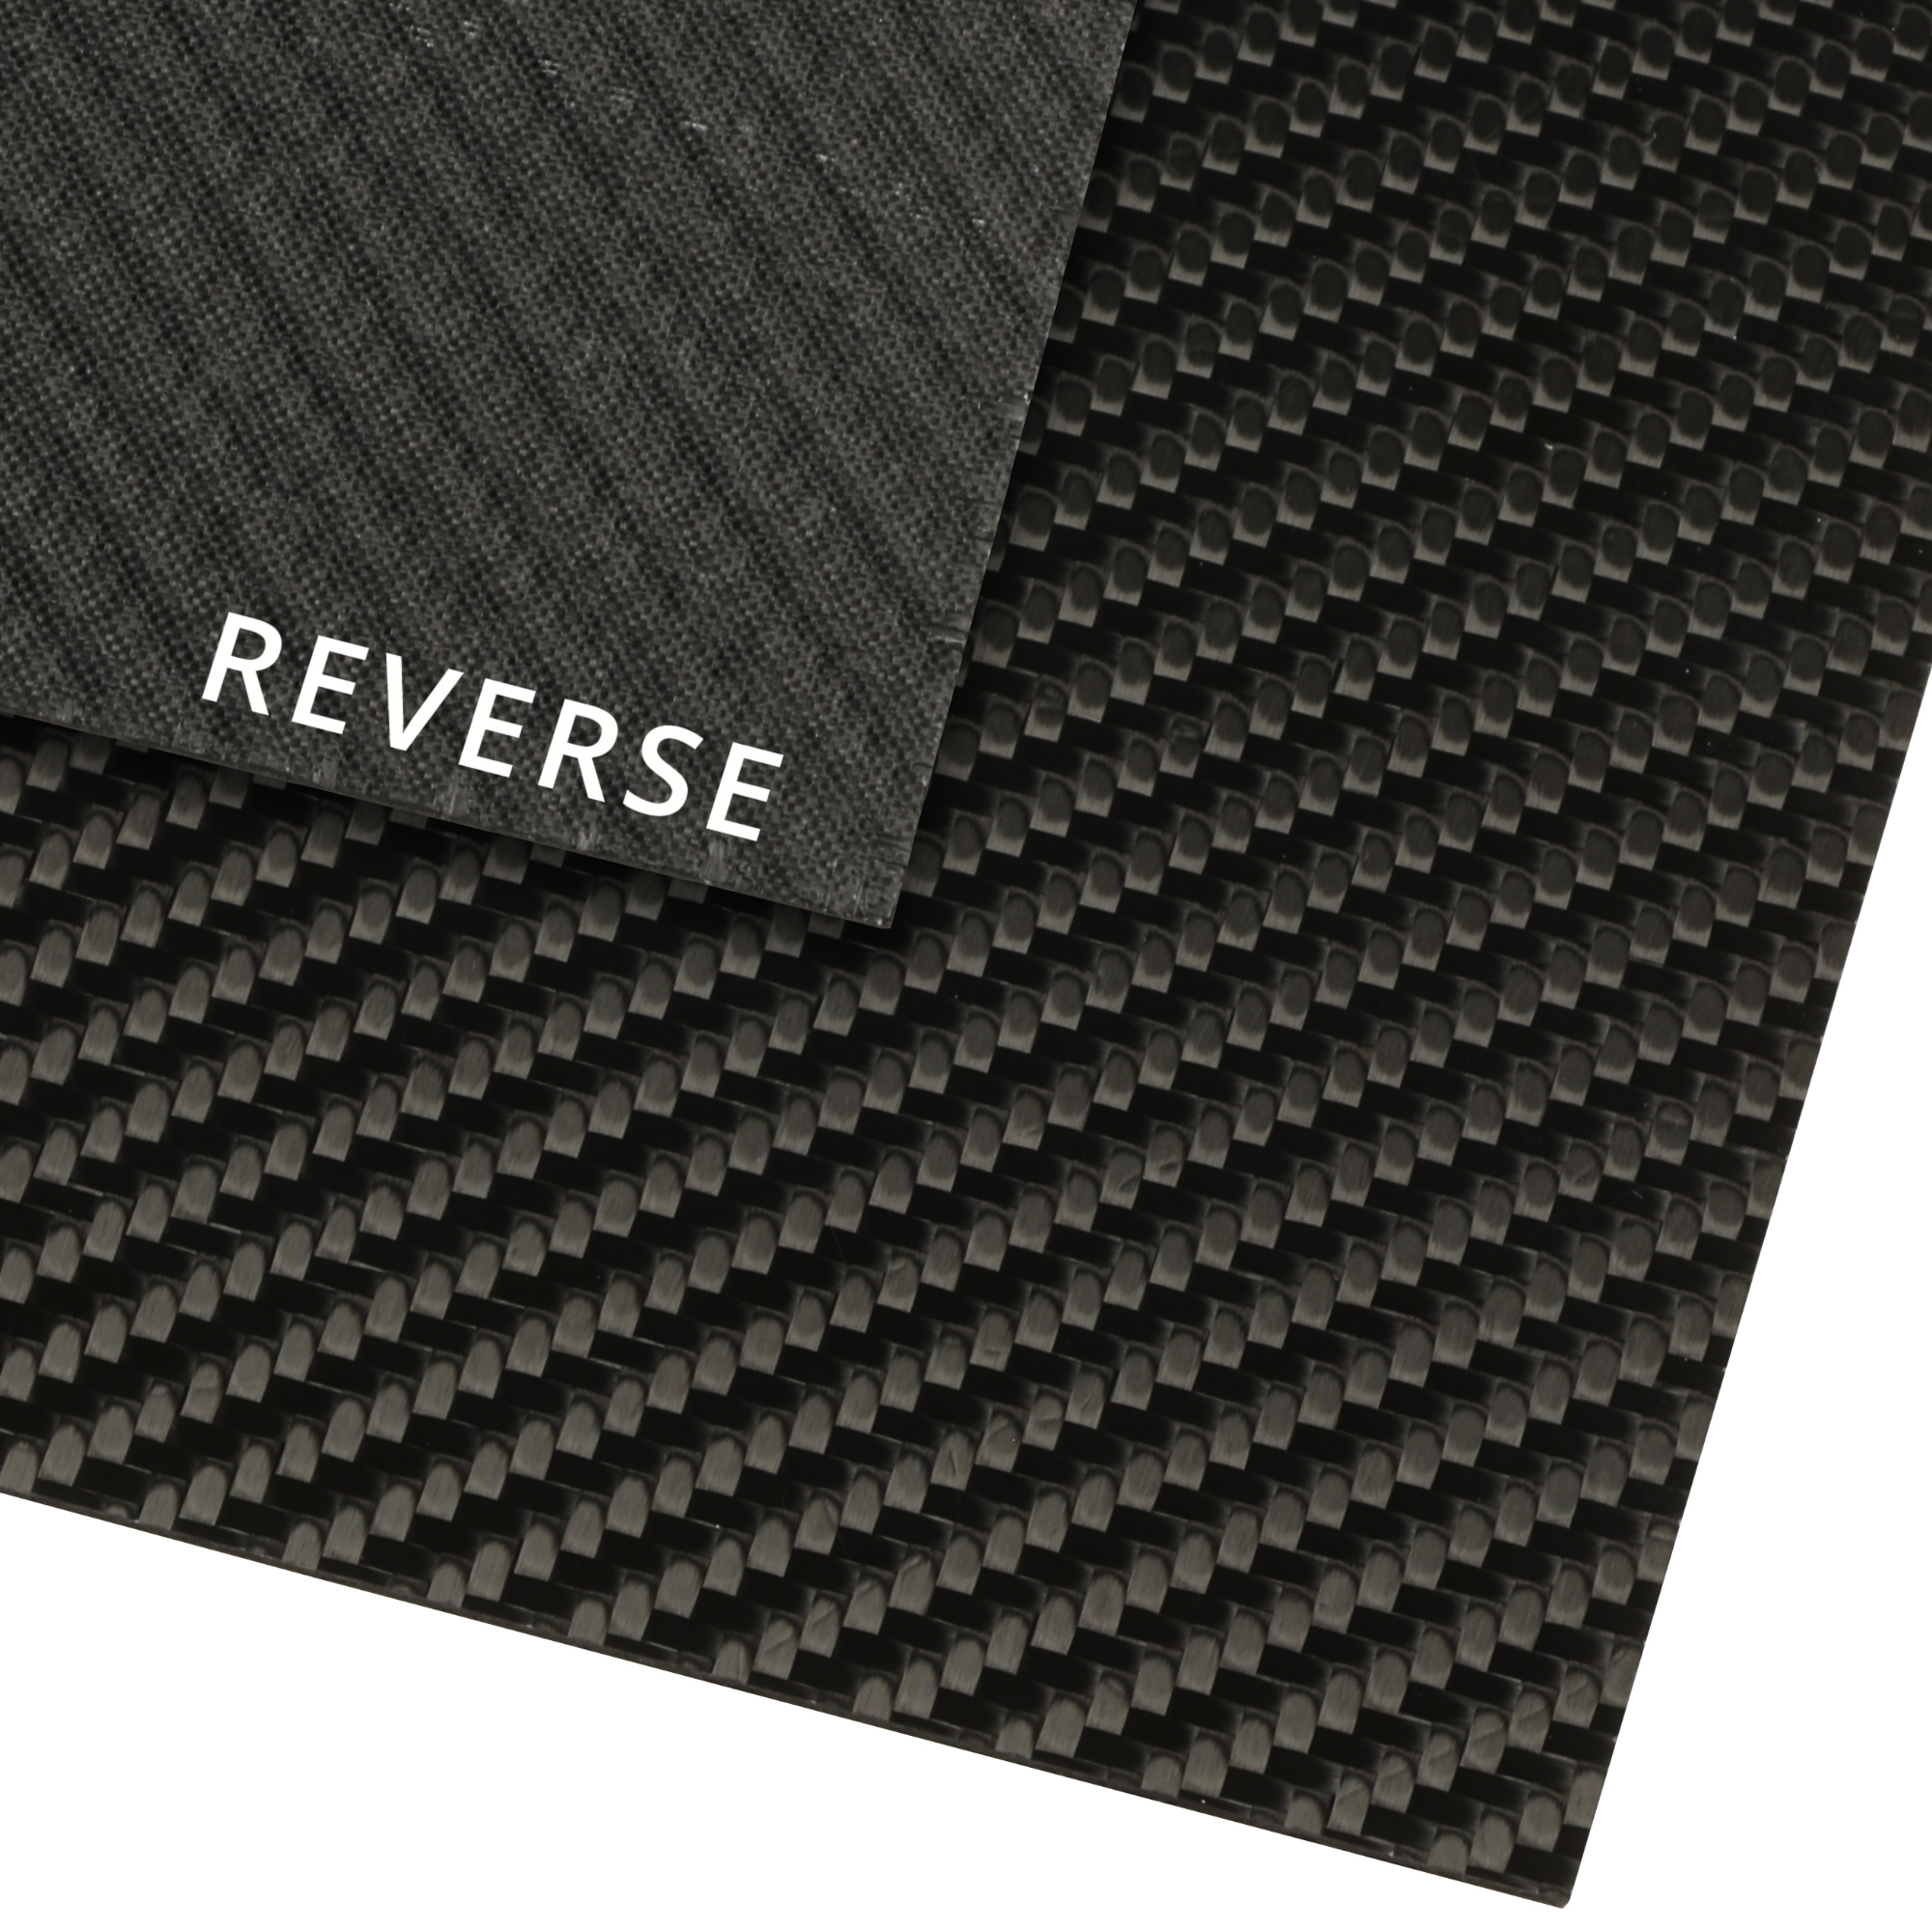 aflevere synonymordbog Kunstig Carbon Fibre Sheet; 1mm, 2mm, 3mm - Easy Composites